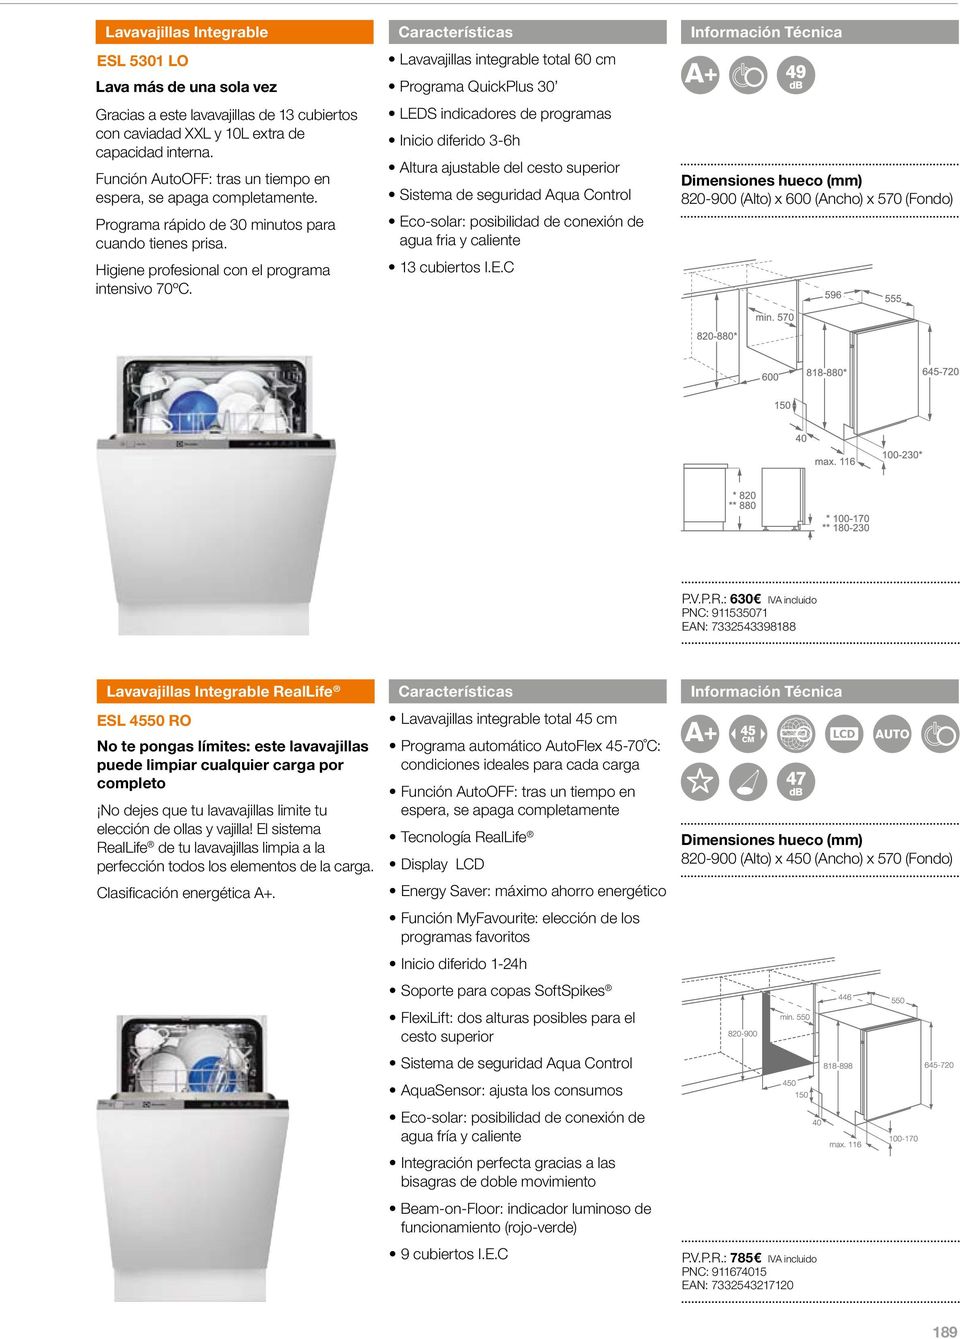 Lavavajillas integrable total 60 cm Programa QuickPlus 30 LEDS indicadores de programas Inicio diferido 3-6h Altura ajustable del cesto superior Eco-solar: posibilidad de conexión de agua fria y